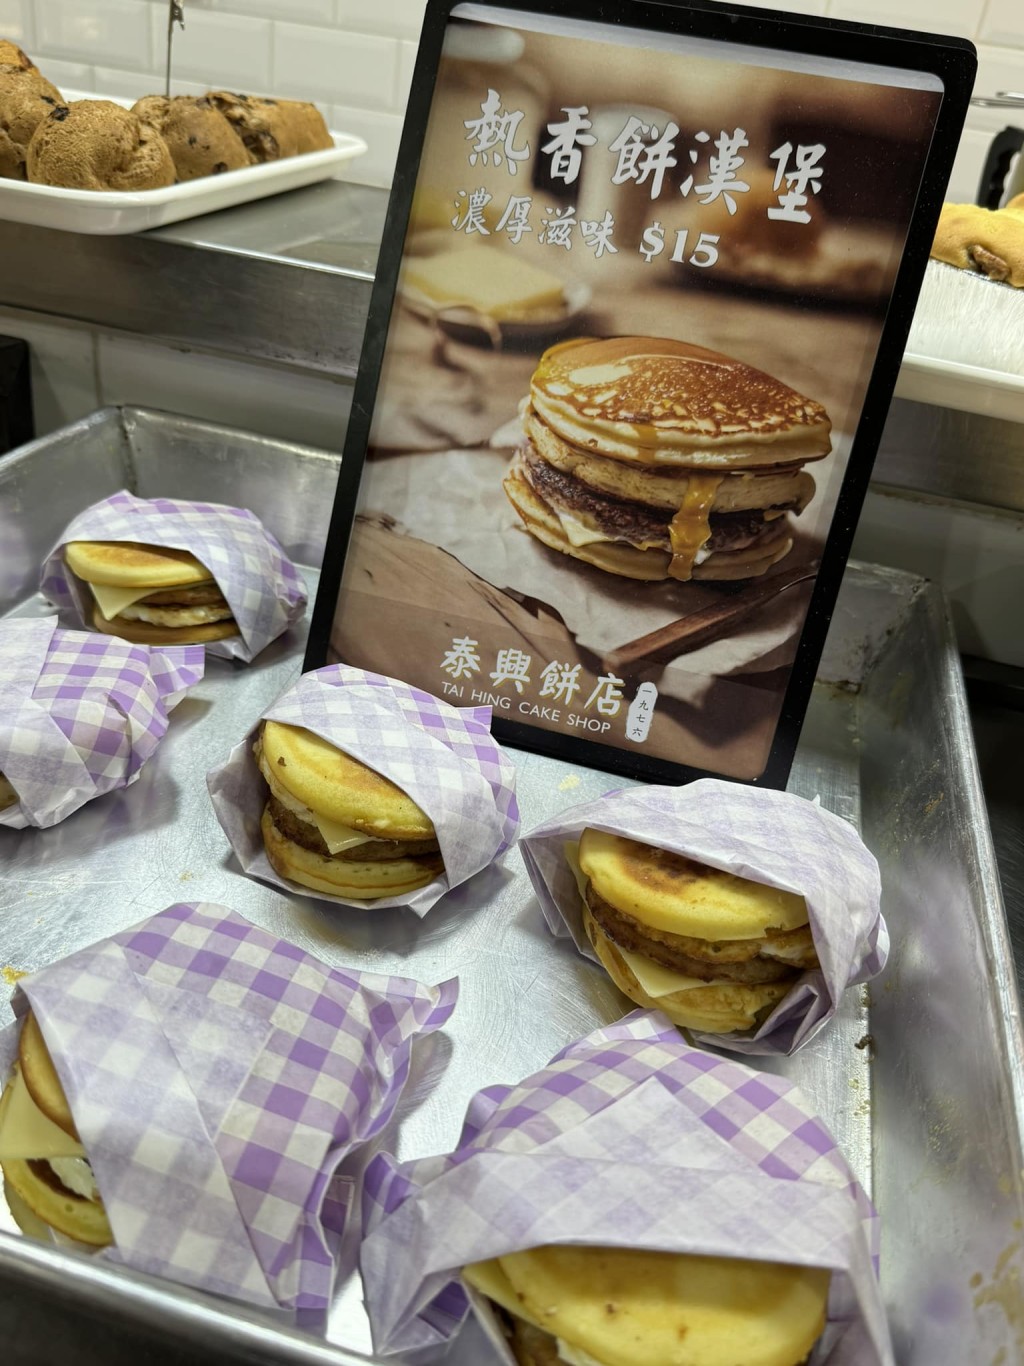 近日有網民發現有荃灣餅店「泰興餅店」推出「熱香餅漢堡。